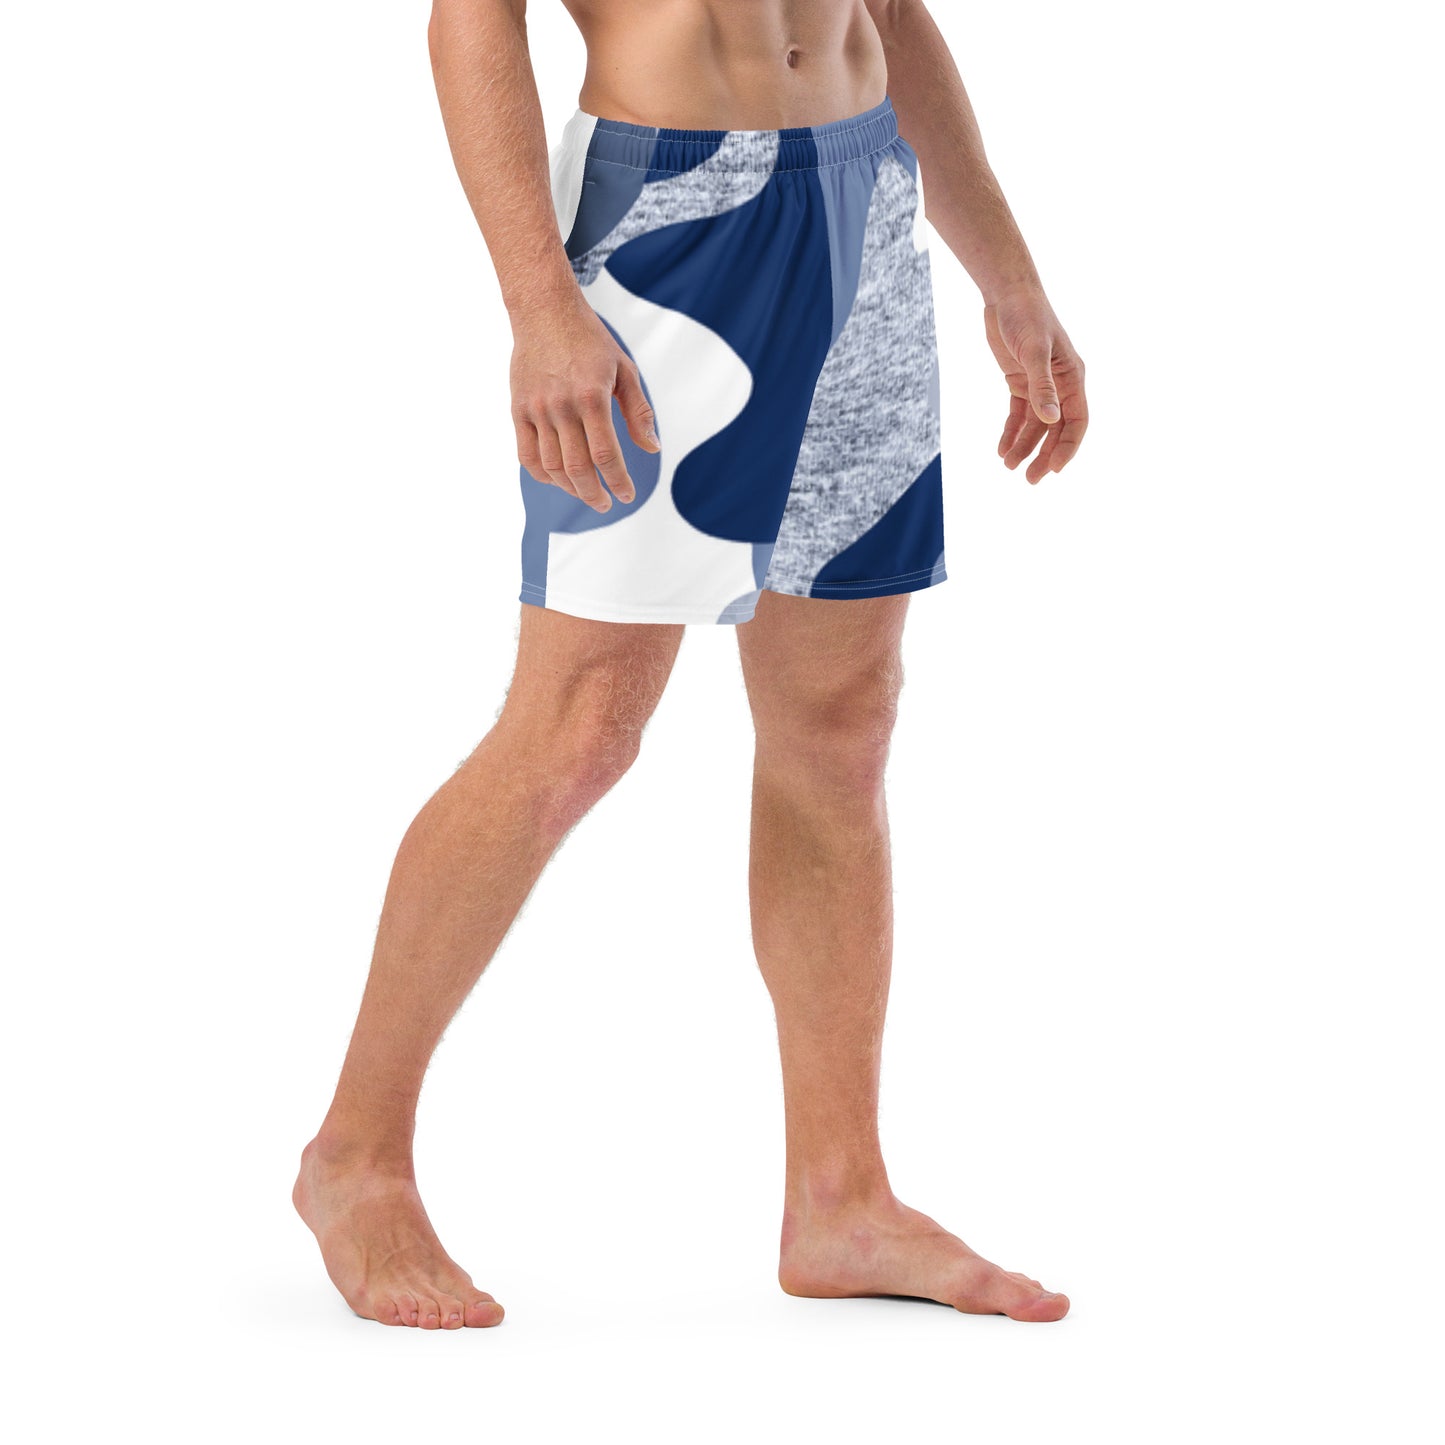 Men's Swim Trunks (Glamourange Mens Swim Trunks By Patterns - 001 Model)